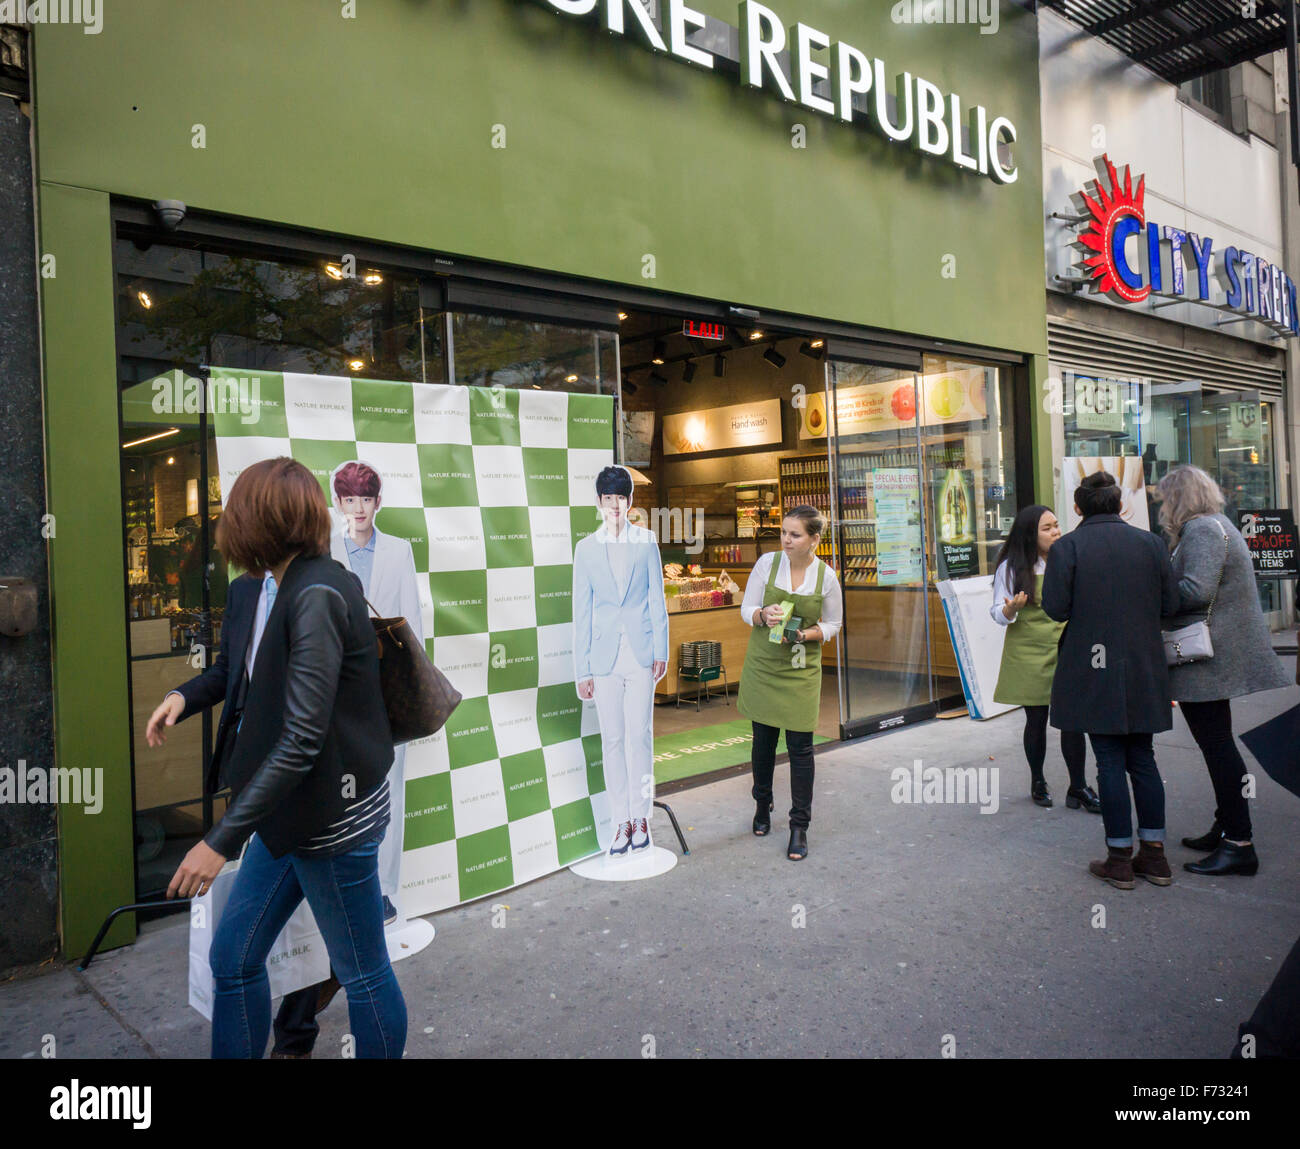 Una rama de los cosméticos y productos de belleza coreana cadena, República de la naturaleza, se abre en Nueva York el viernes, 13 de noviembre de 2015. (© Richard B. Levine) Foto de stock